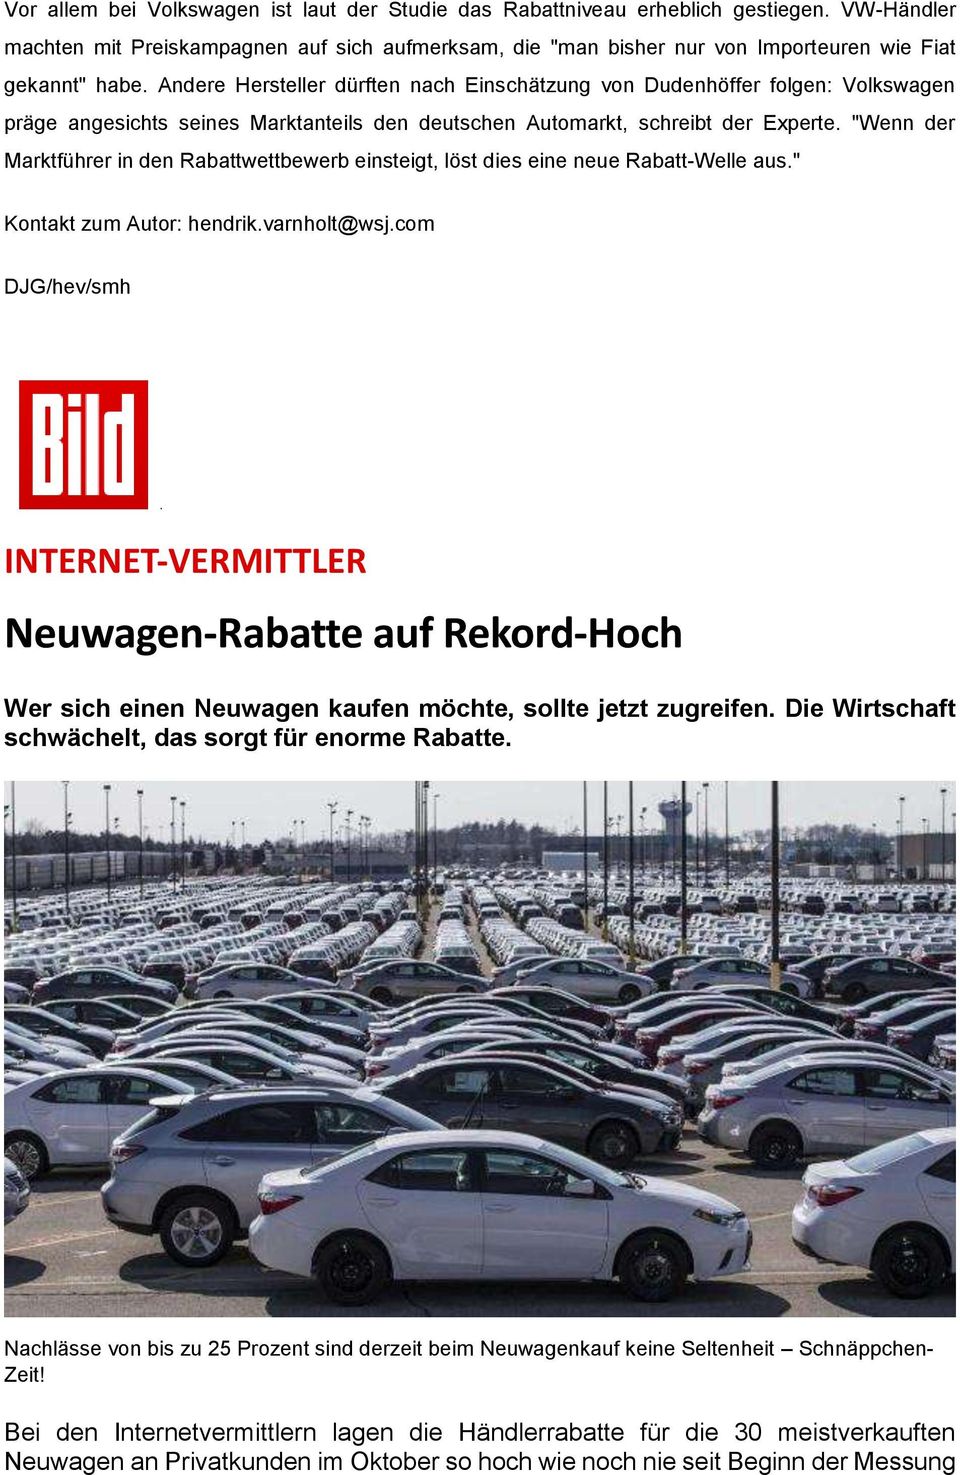 Andere Hersteller dürften nach Einschätzung von Dudenhöffer folgen: Volkswagen präge angesichts seines Marktanteils den deutschen Automarkt, schreibt der Experte.